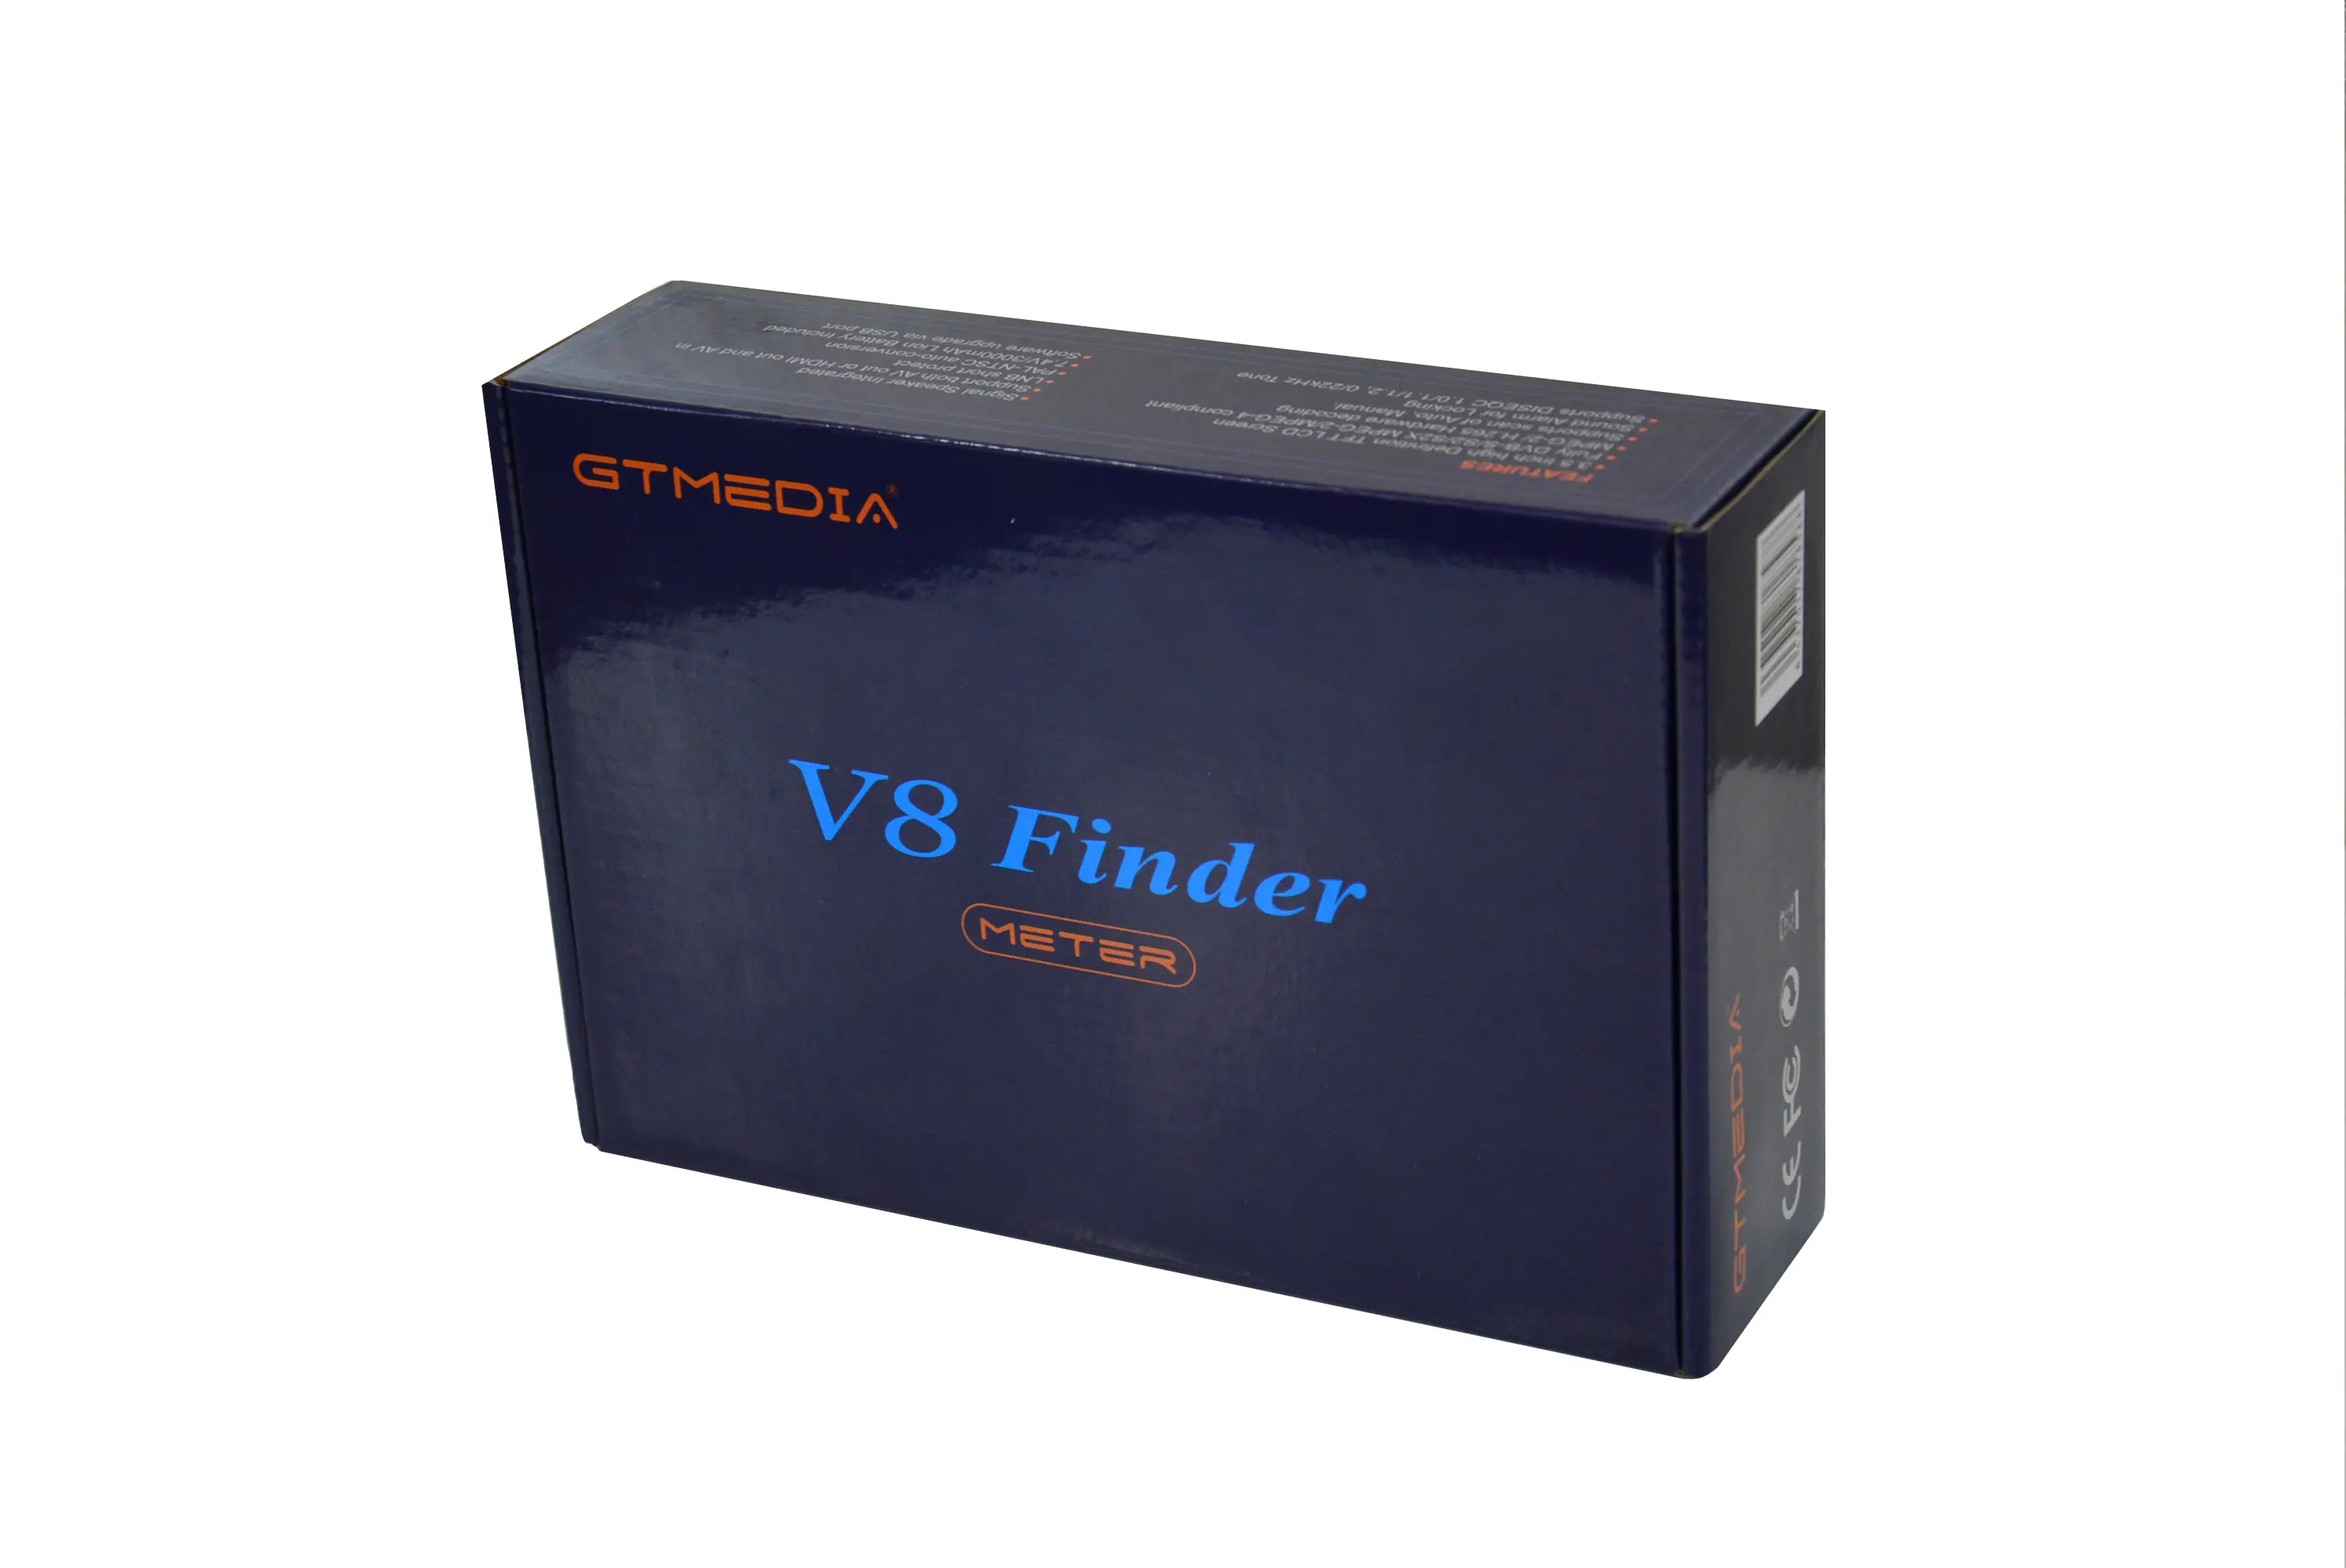 Miernik GTMedia FreeSAT V8 ver.2